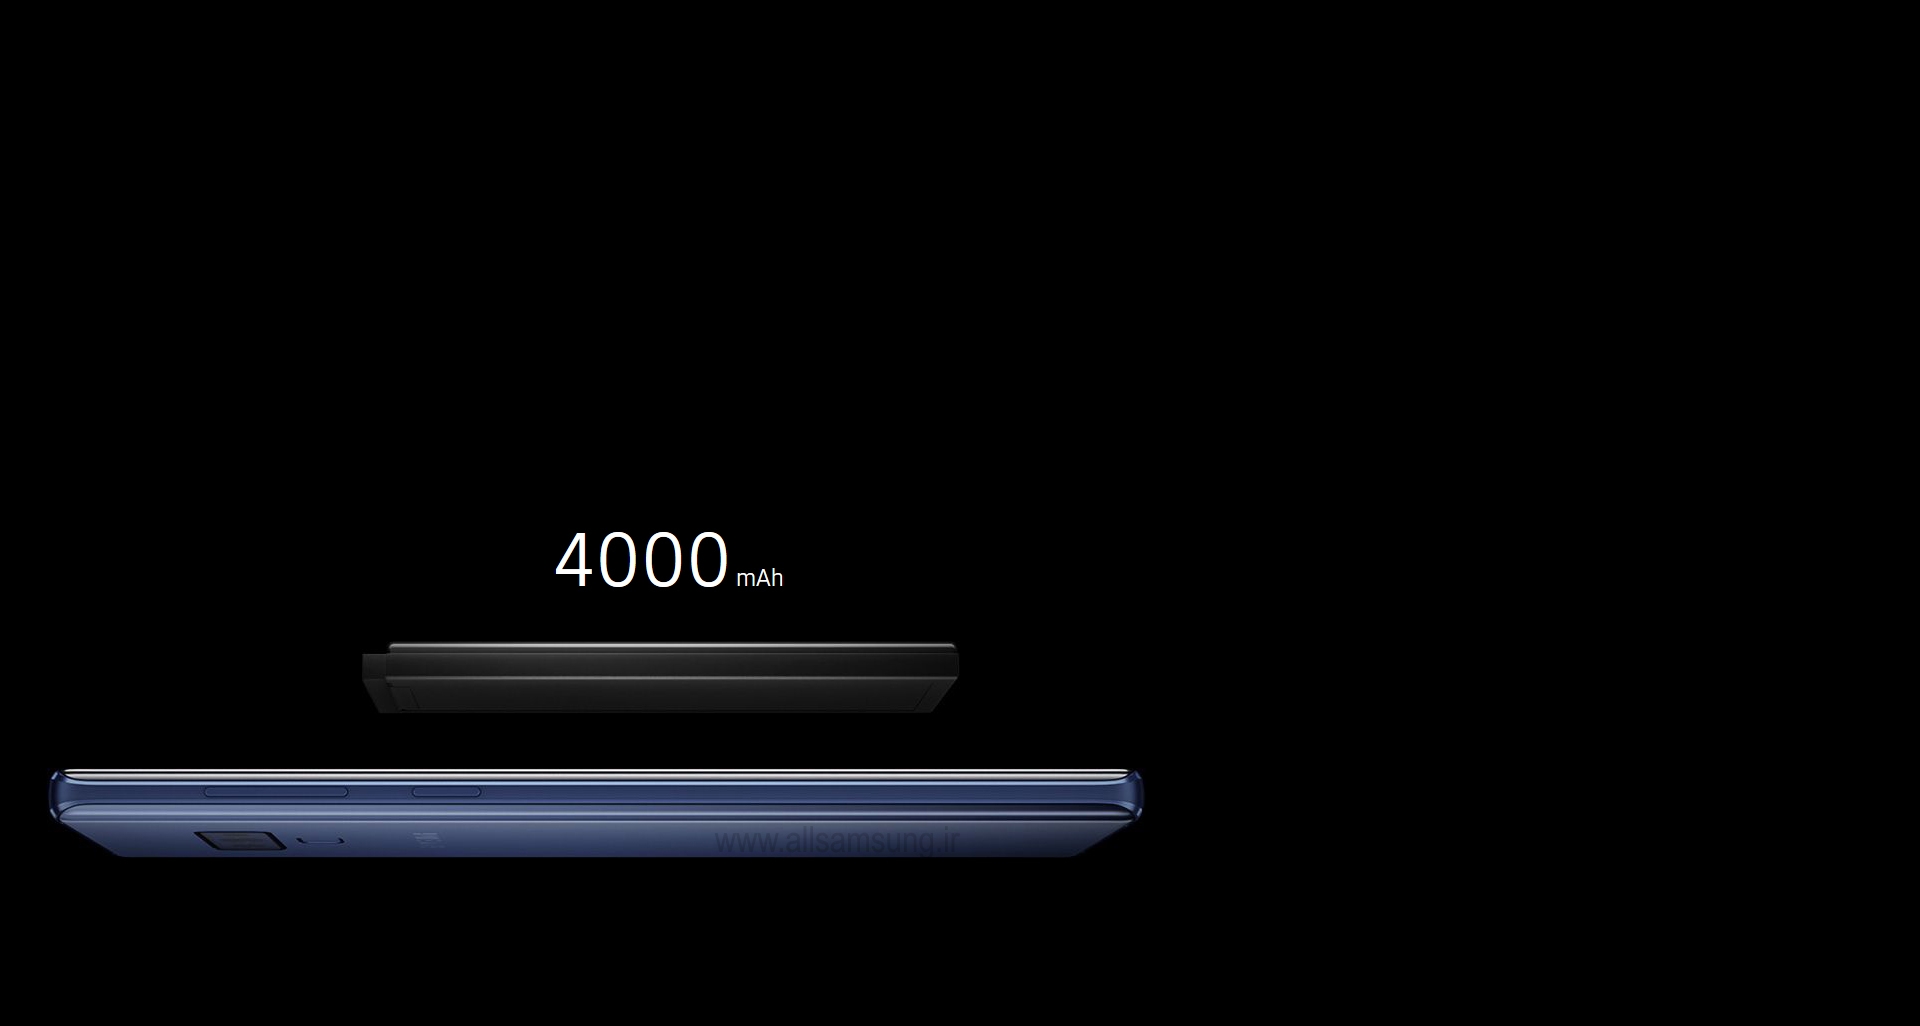 گوشی گلکسی N960 با قدرتی بی اندازه برای همراهی با شما